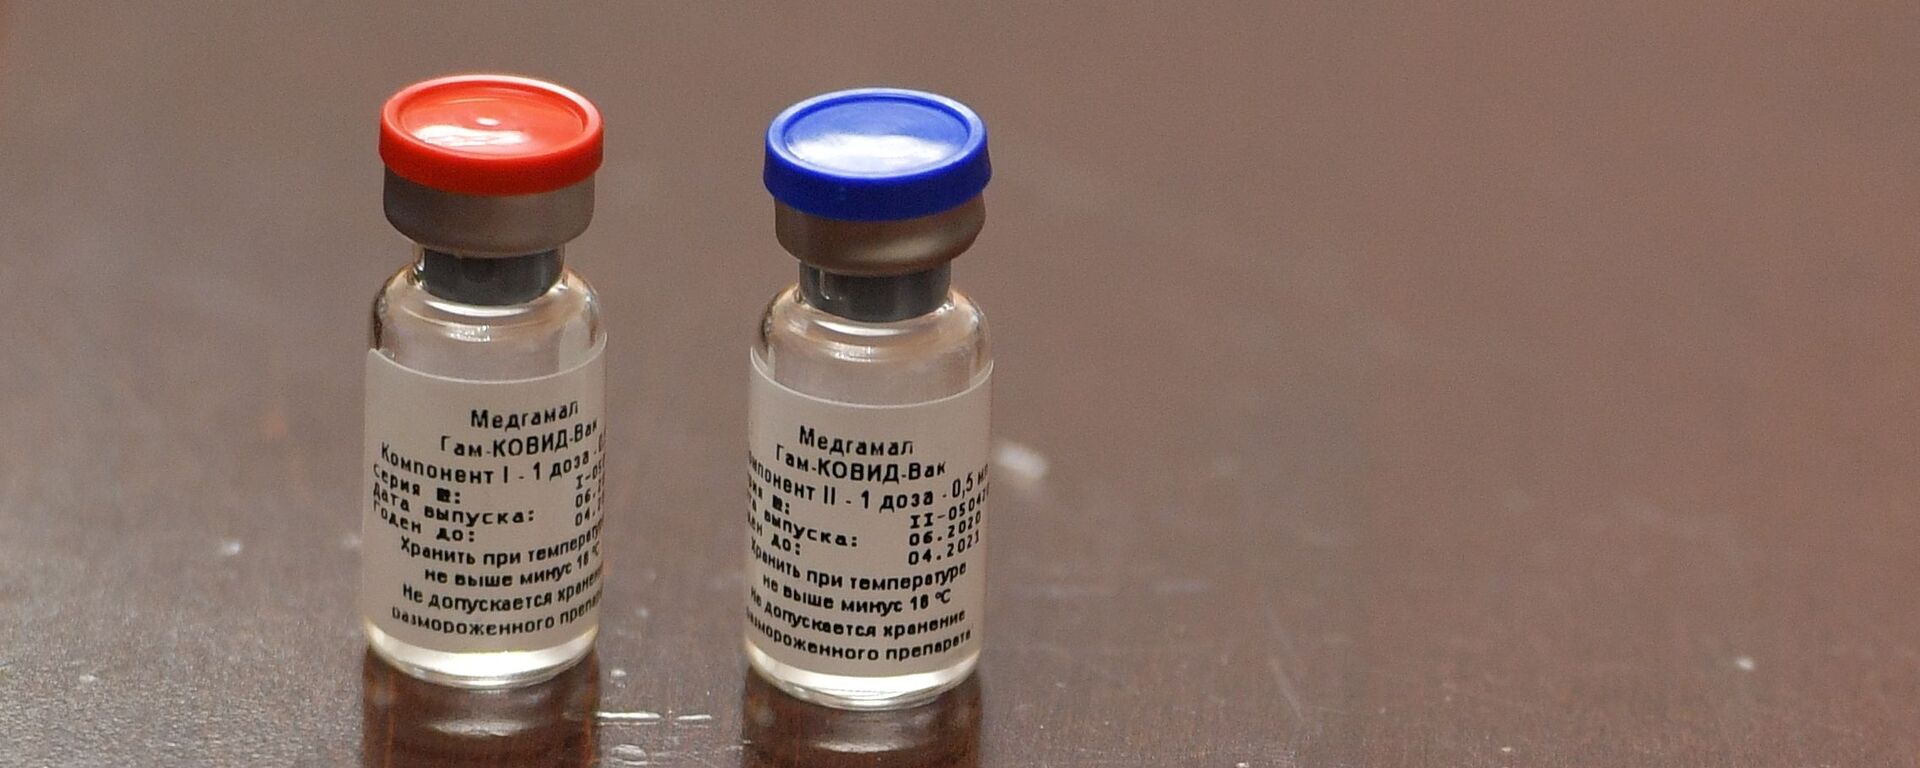 Брифинг, посвященный первой в мире зарегистрированной вакцине от COVID-19 - Sputnik Армения, 1920, 04.02.2021